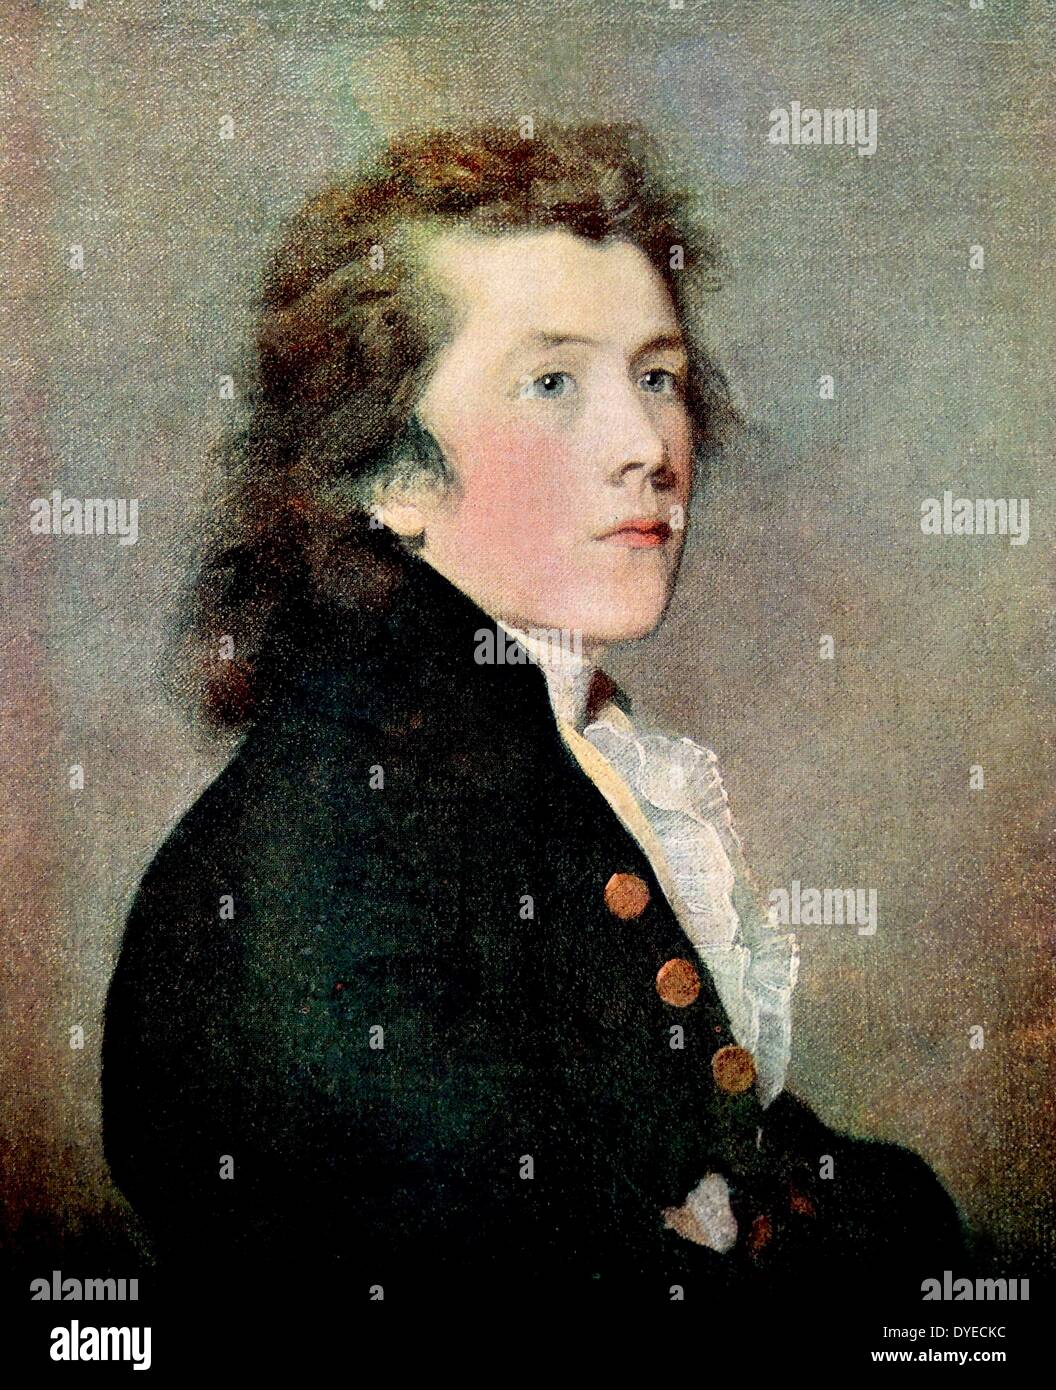 Portrait de Simon Cottle (1766 Amos - 1800) un poète et traducteur français. Par Samuel Palmer (1805- 1881) French Painter, aquafortiste et graveur. Datée 1850 Banque D'Images